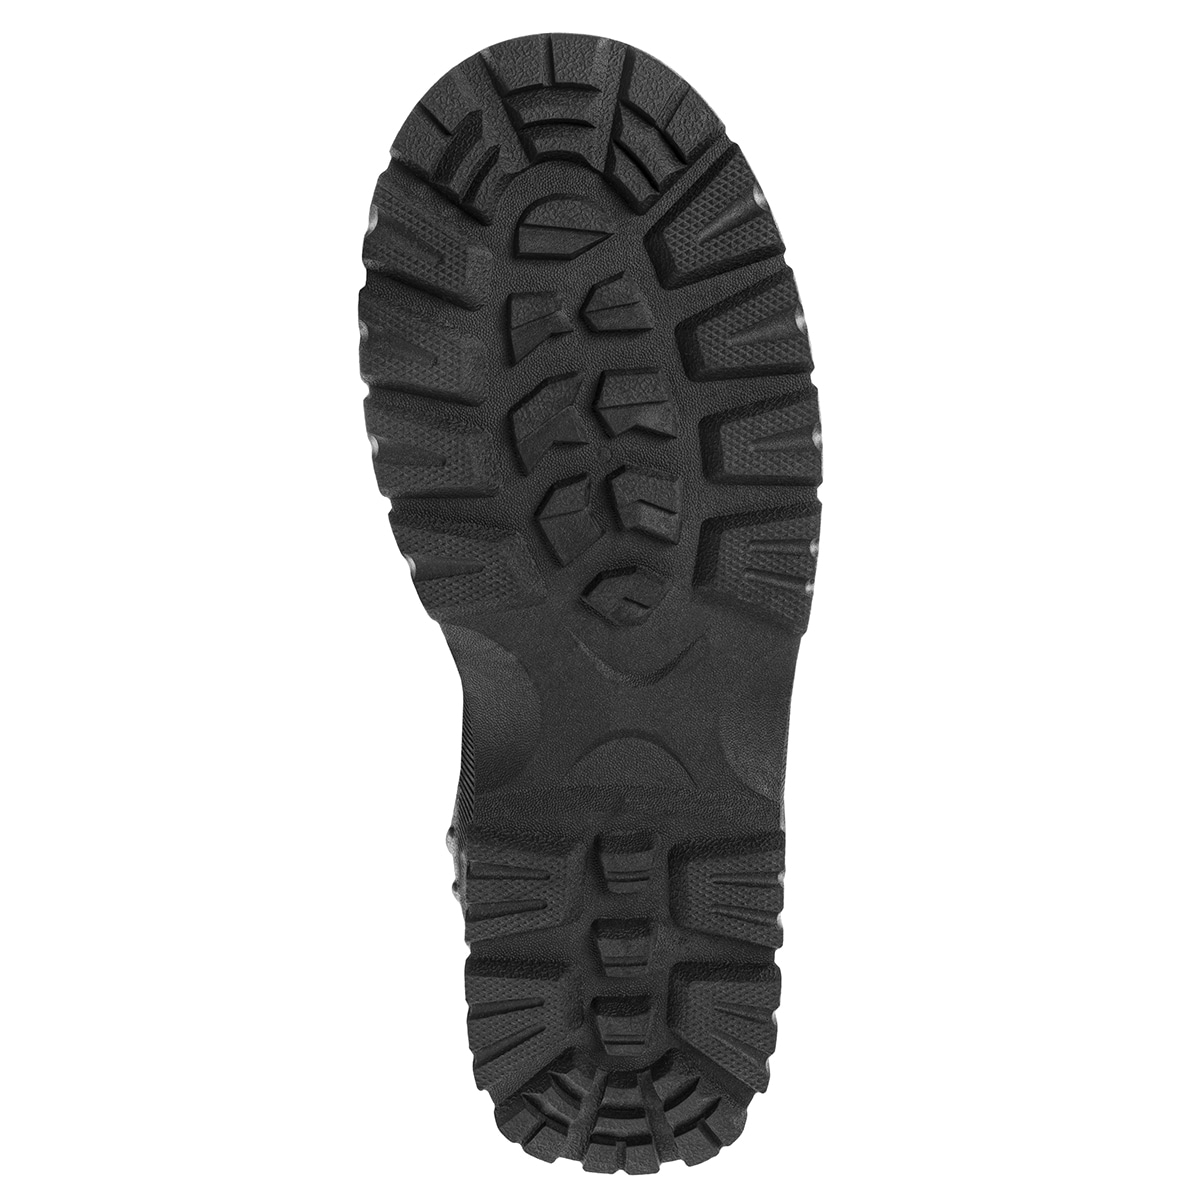 Зимові черевики Mil-Tec Snow Boots Arctic - Black